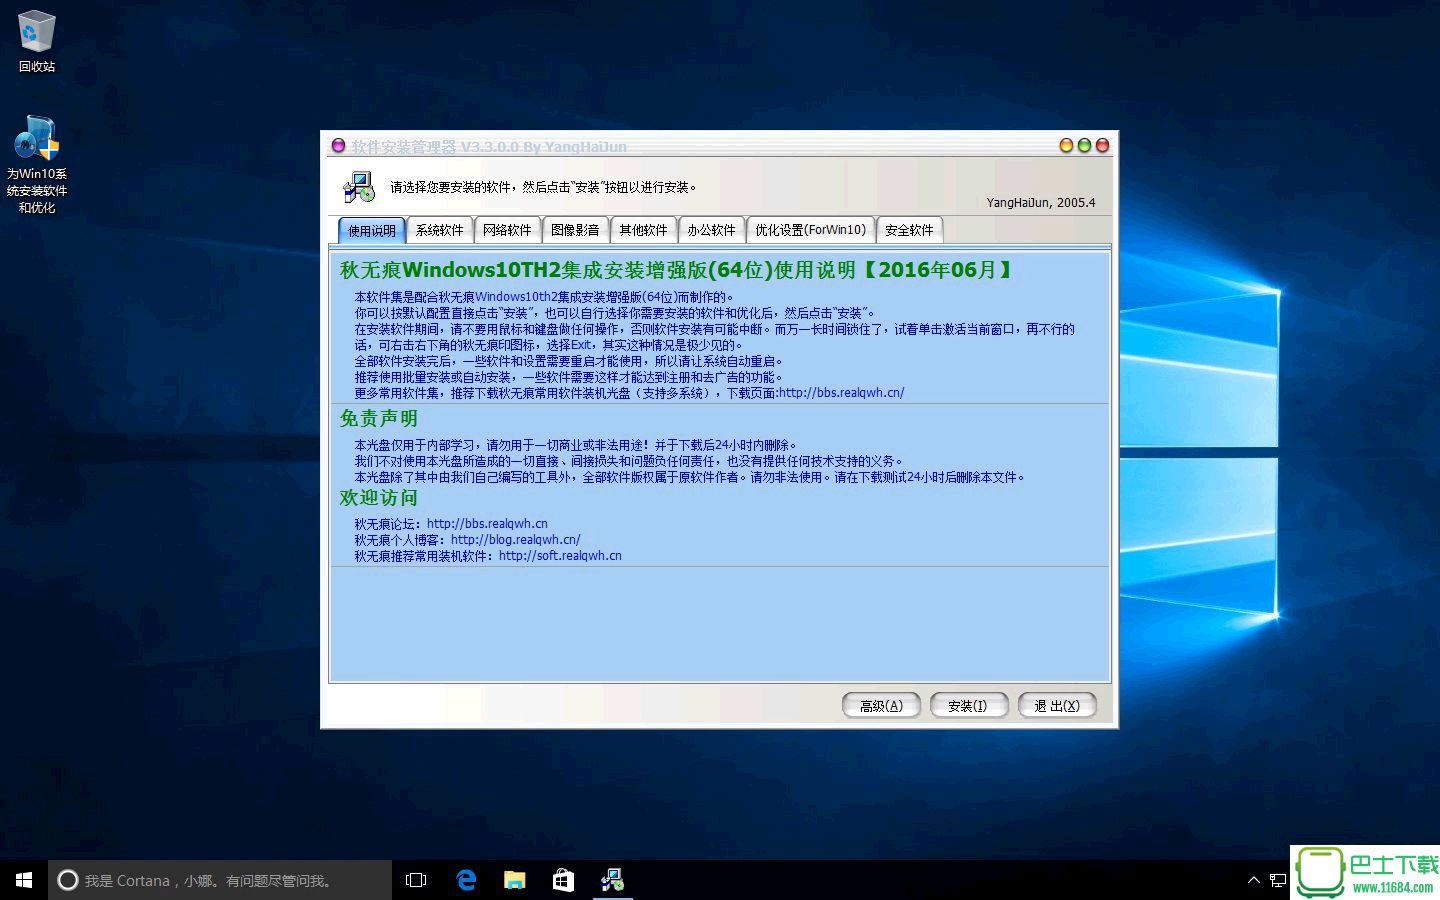 秋无痕Windows10th2下载-秋无痕Windows10th2(专业版+企业版)64位集成安装增强版下载v201606